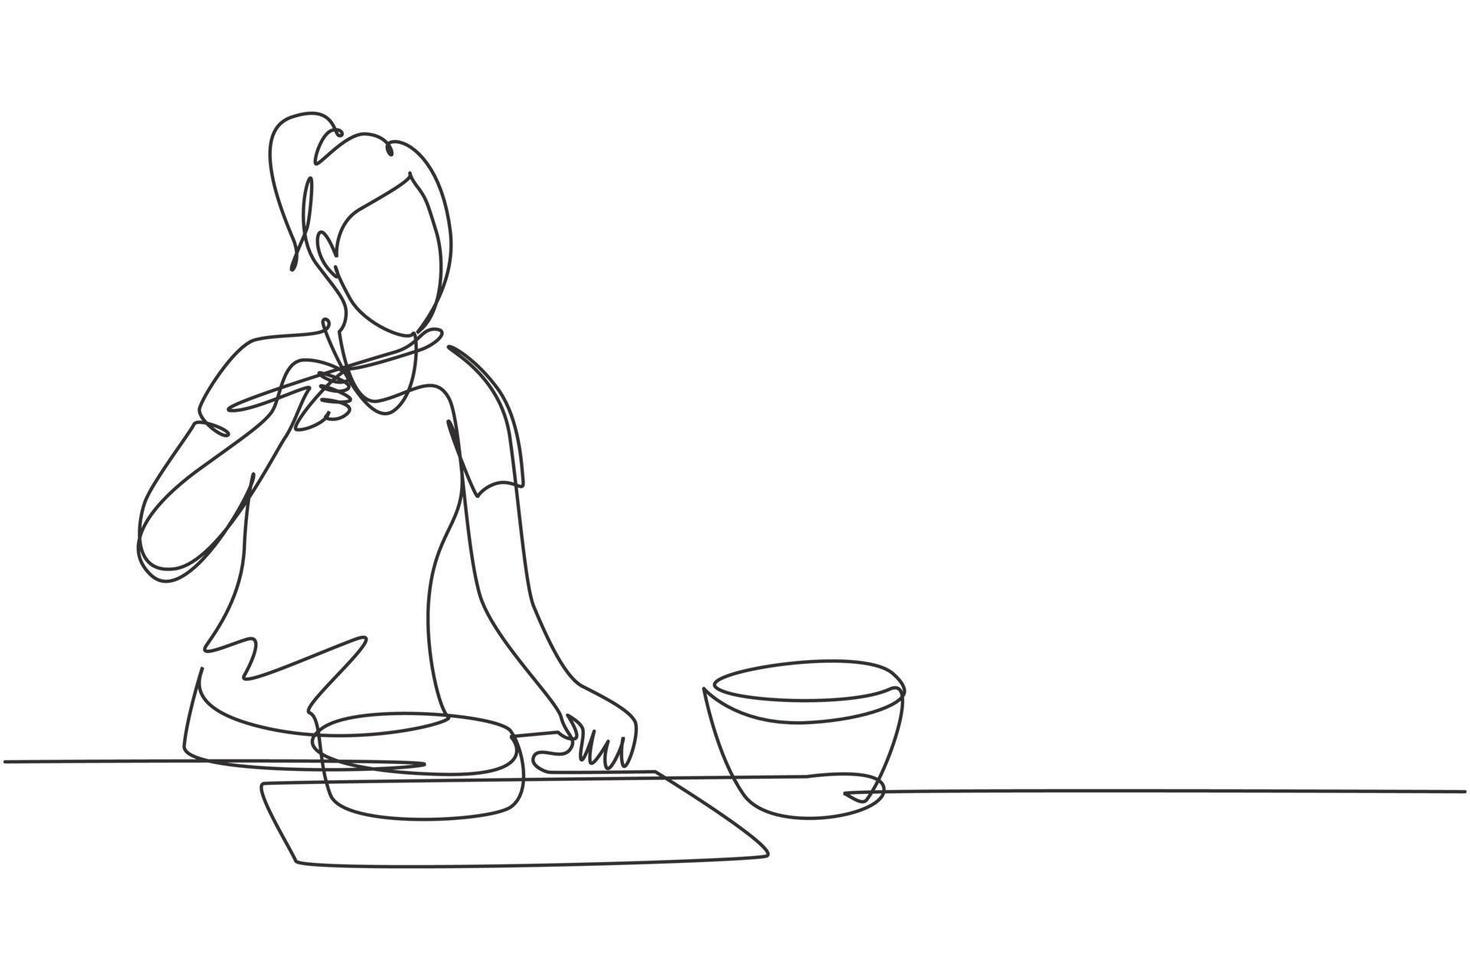 único desenho de linha contínua linda mulher misturando molho de tomate, degustação e refeição de condimento com espátula de madeira. preparar comida na cozinha aconchegante. ilustração em vetor desenho gráfico dinâmico de uma linha